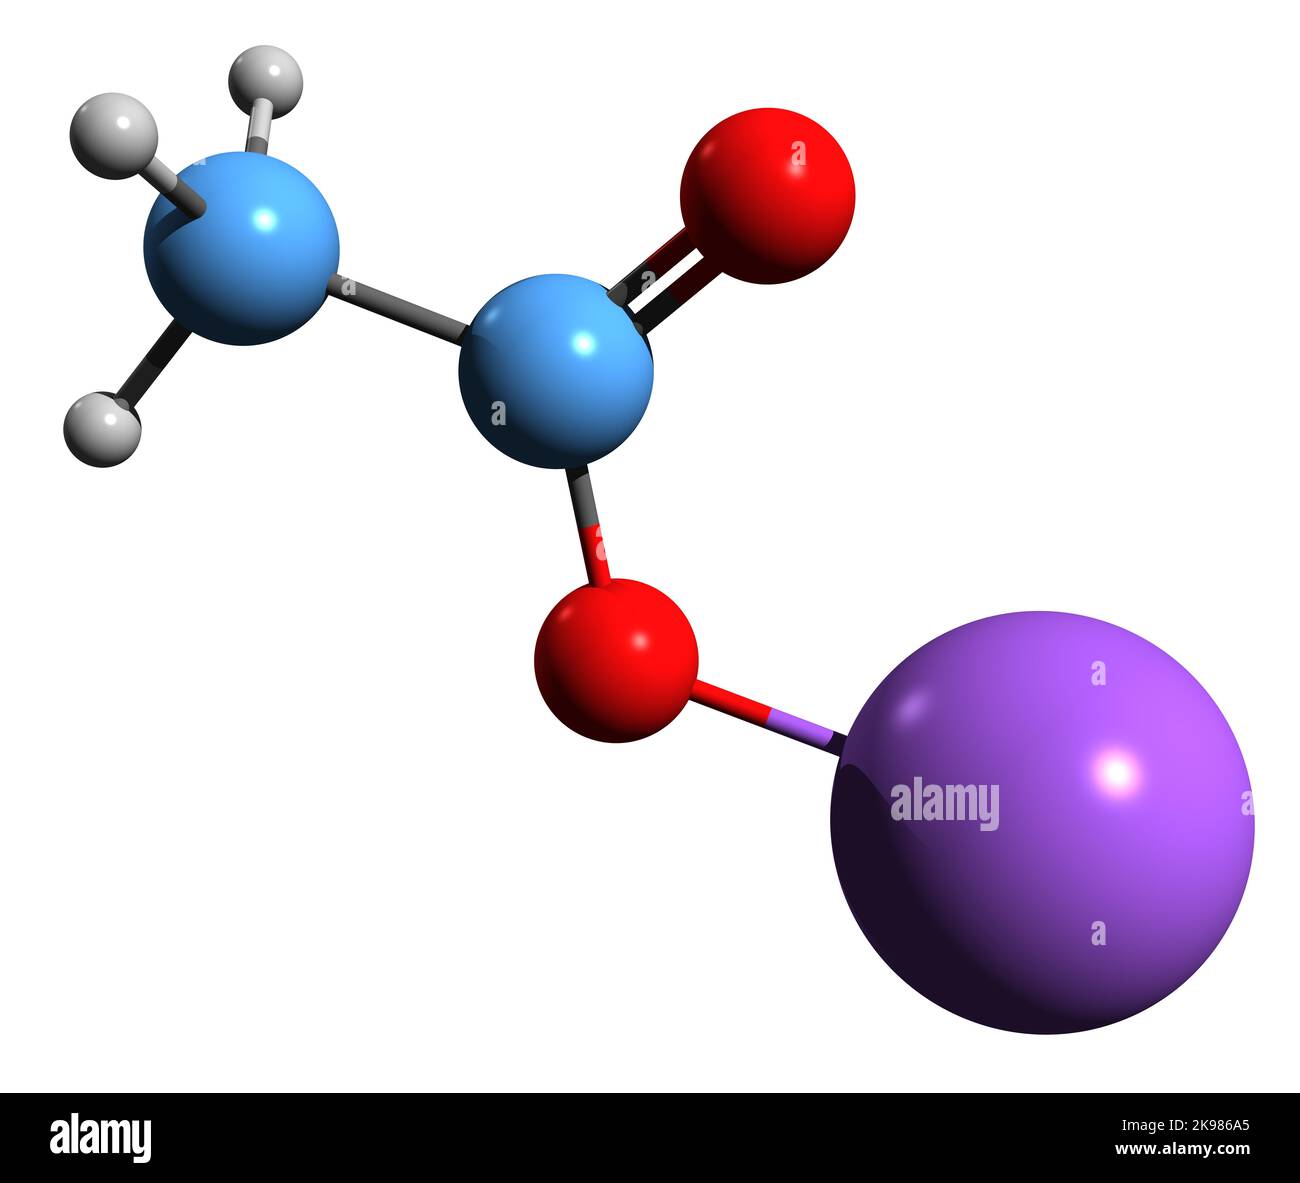 3D image de formule squelettique à l'acétate de sodium - structure chimique moléculaire de la glace chaude isolée sur fond blanc Banque D'Images